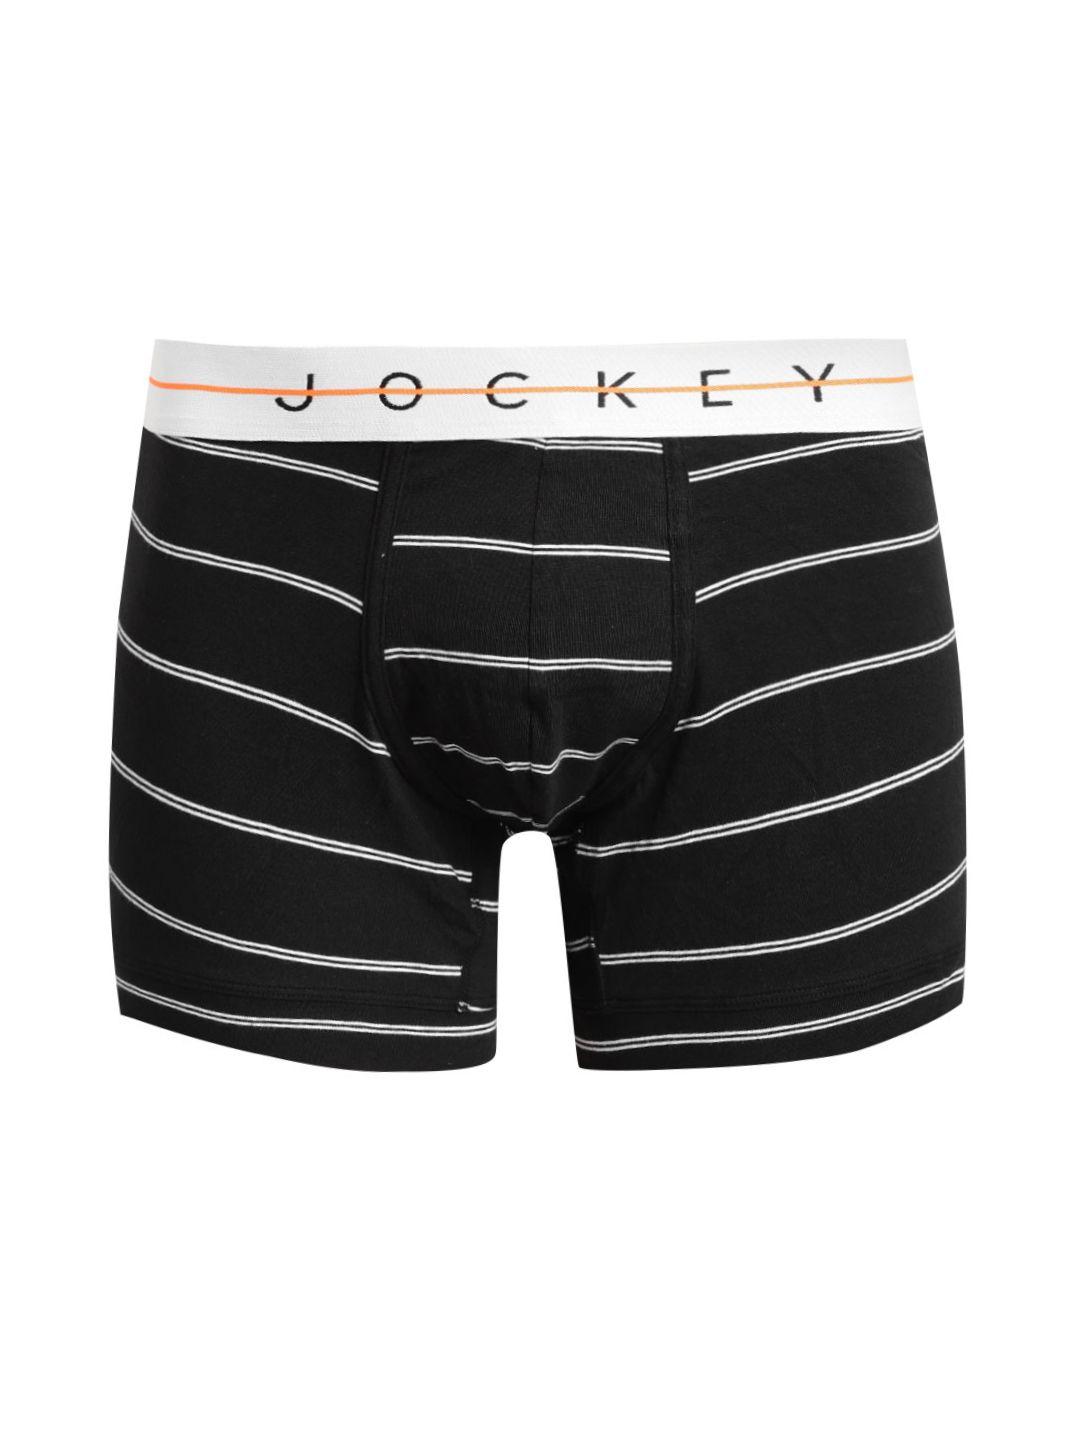 jockey men striped cotton trunk ny02-0105